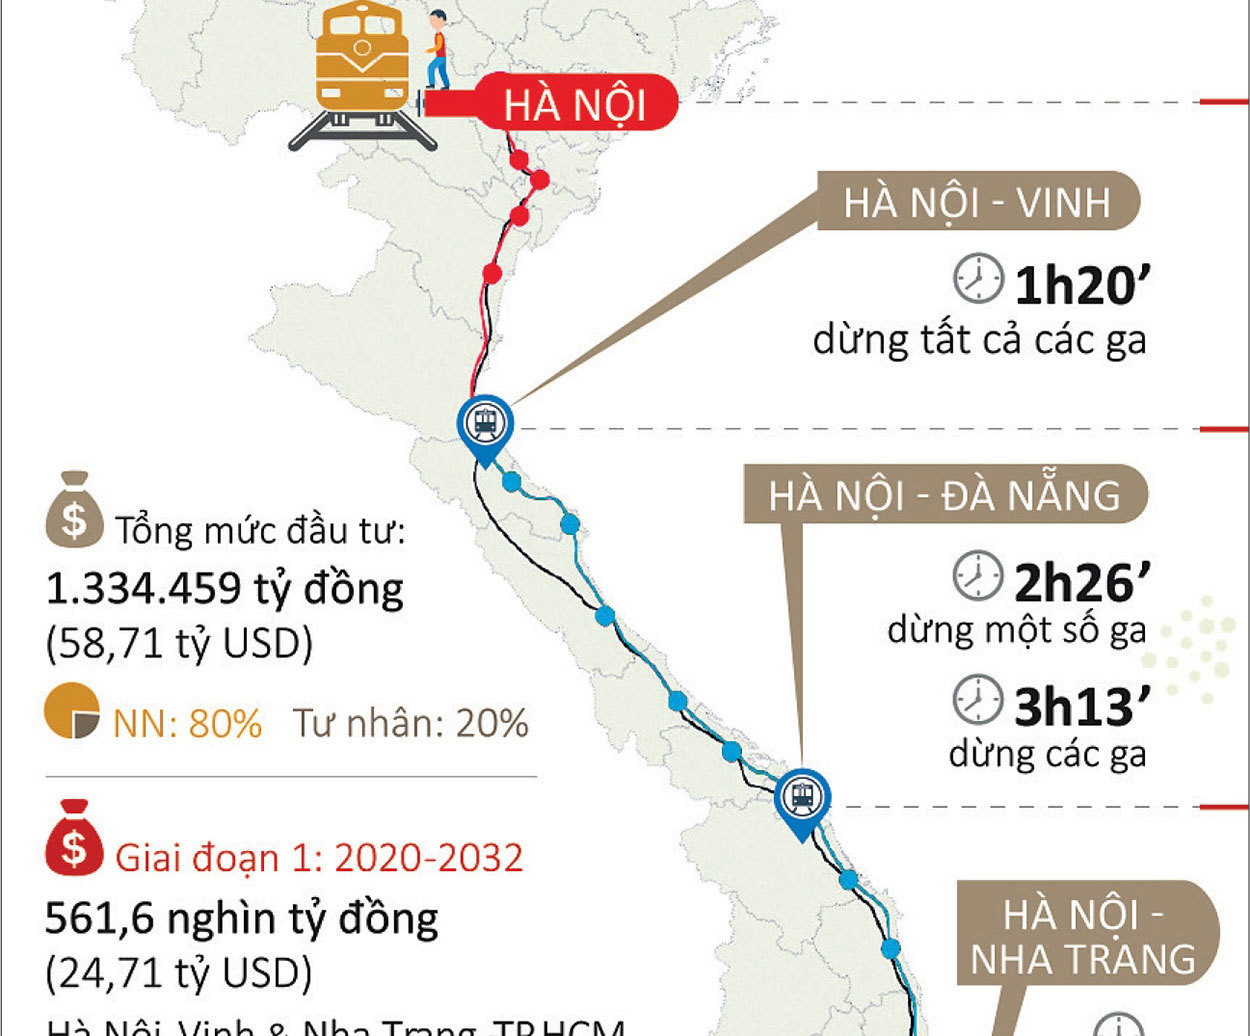 Khi nào đi đường sắt Hà Nội - Sài Gòn chỉ mất 5 giờ?